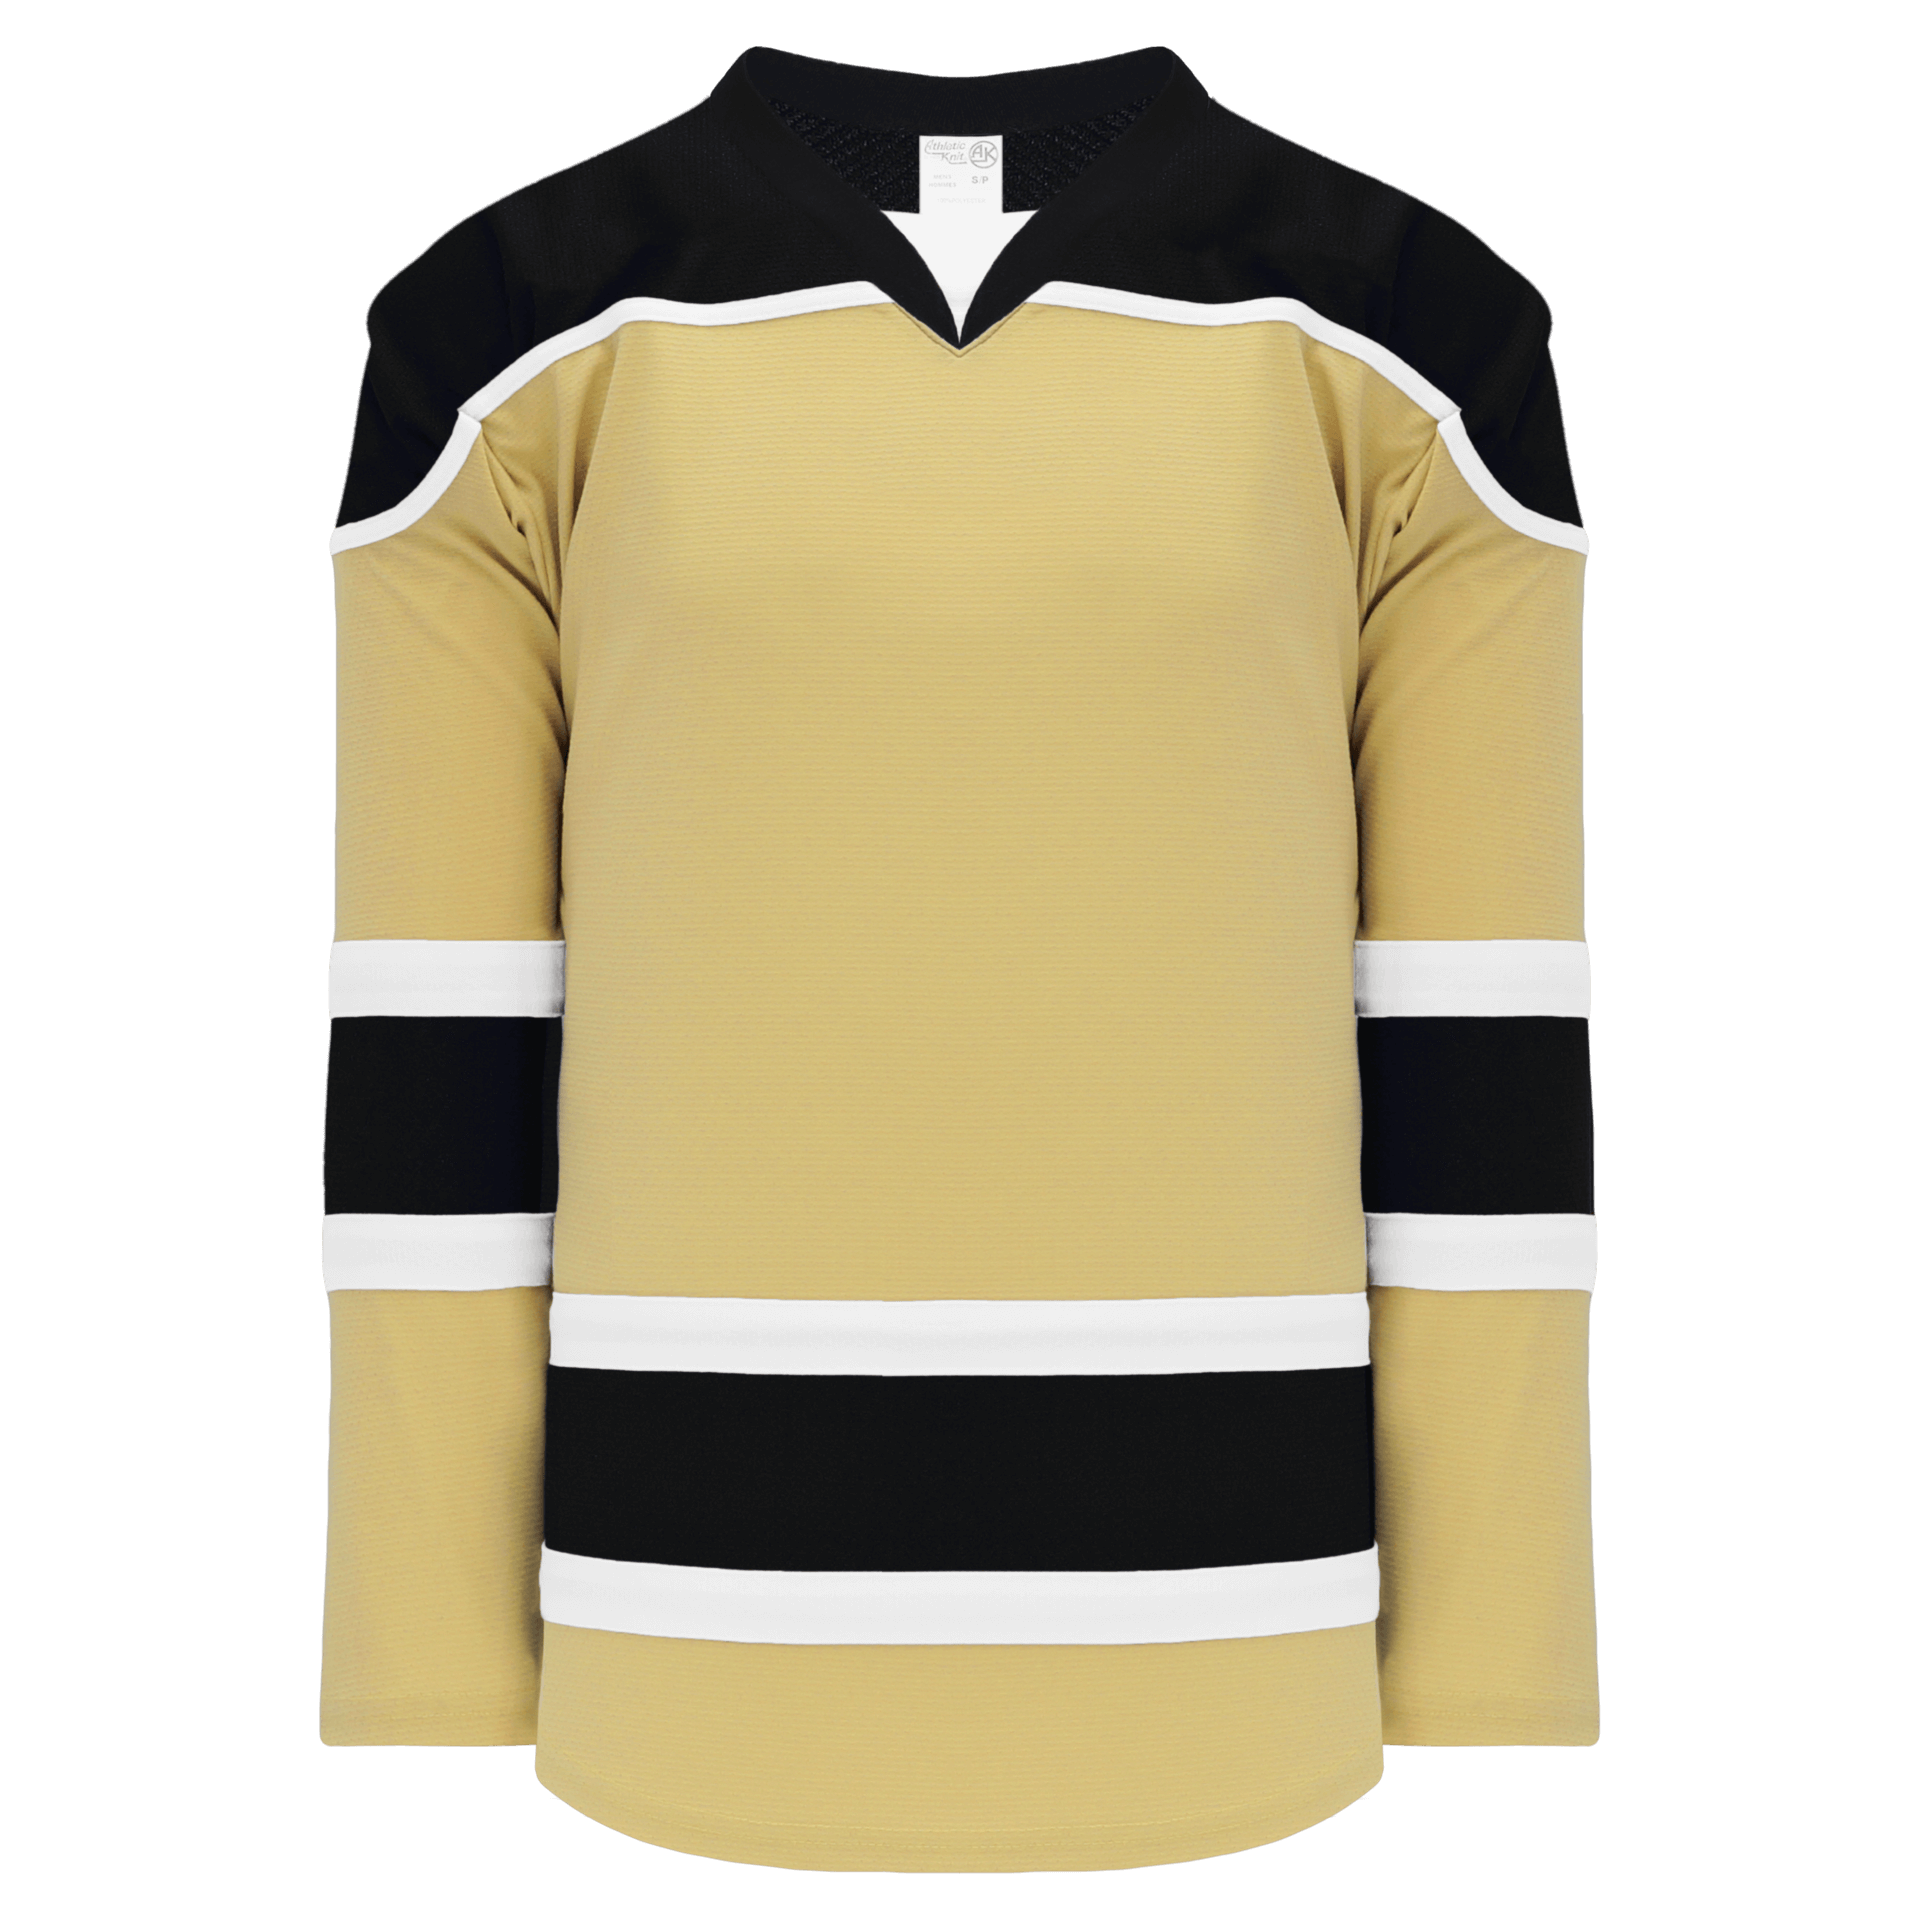 Blank Hockey Jerseys, Custom Hockey Jerseys